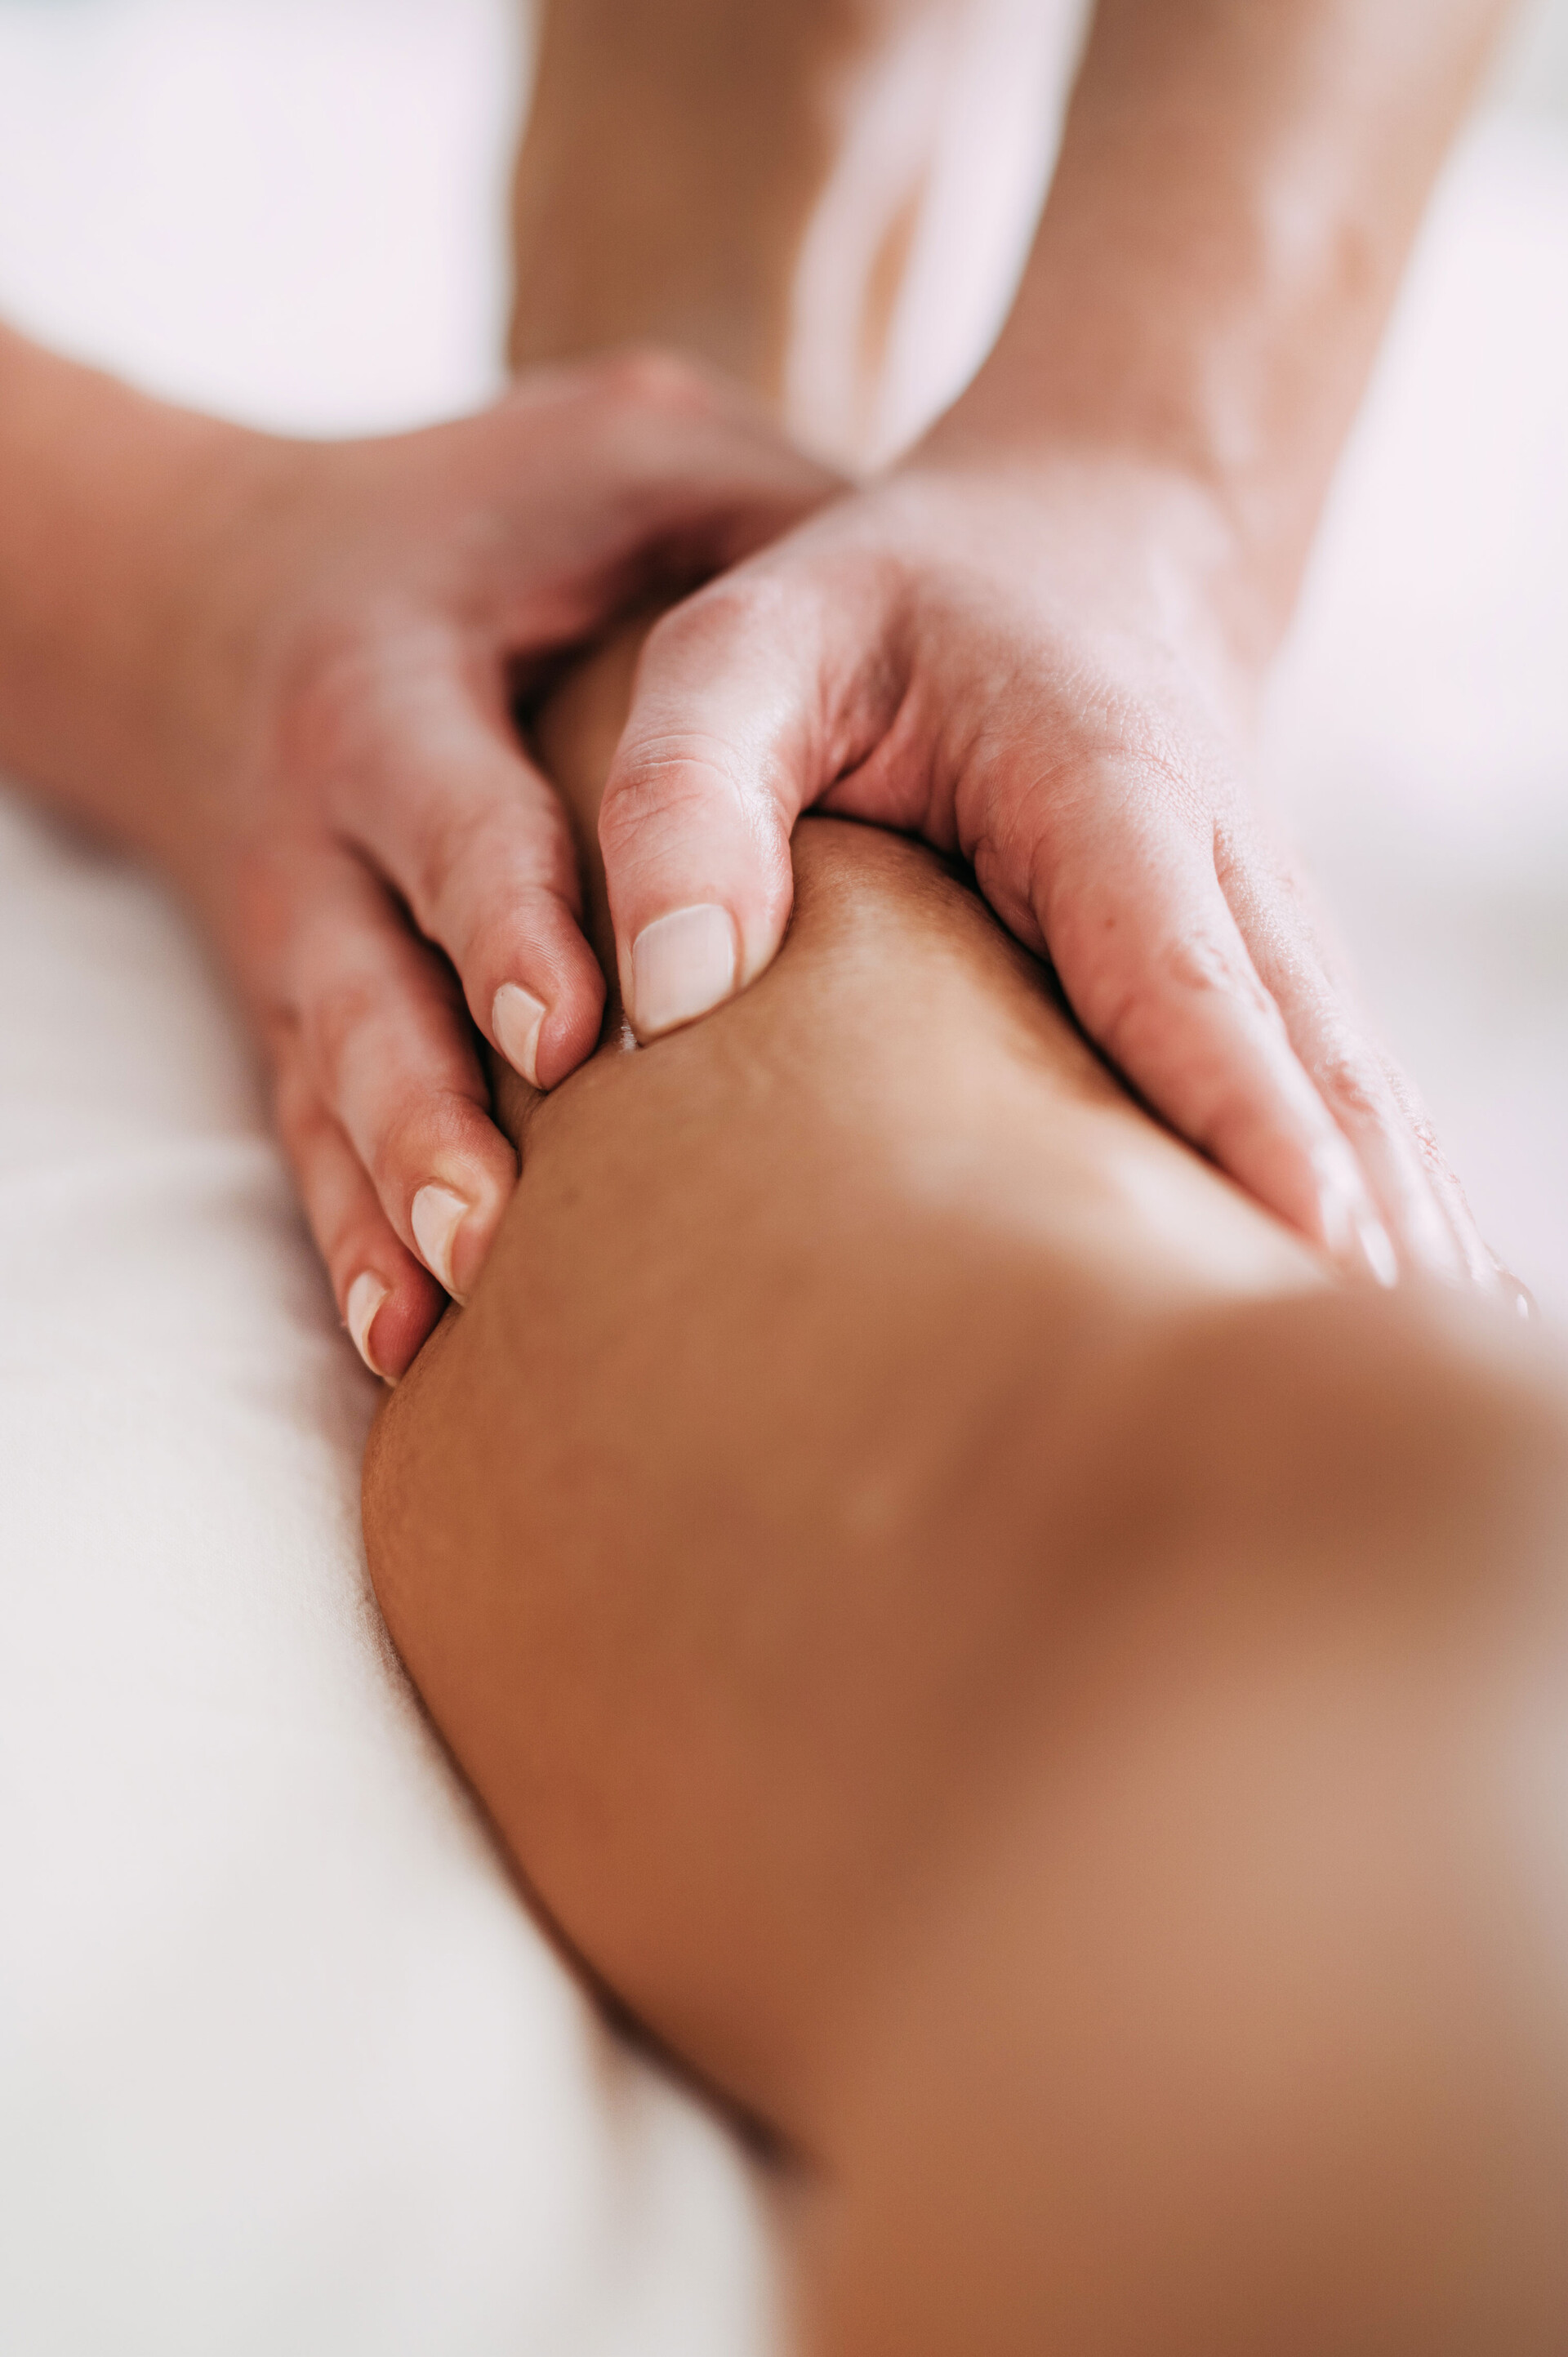 Hautprodukte können auch zur Massage eingesetzt werden, wie dieses Bild von zwei massierenden Händen auf einer Wade zeigt.